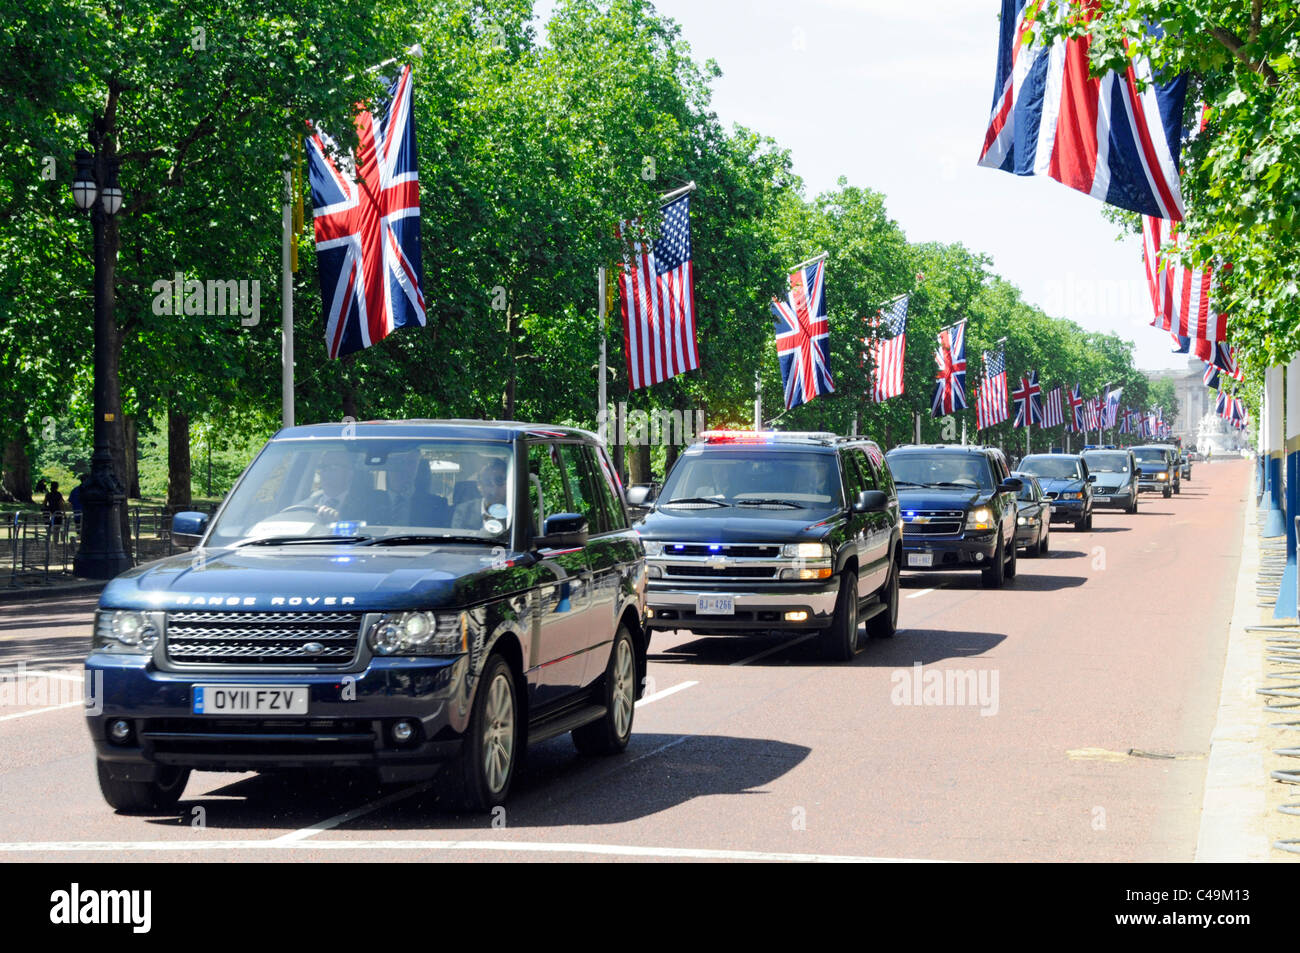 Cabalgata presidencial de guardias de seguridad del Reino Unido y EE.UU. En el Centro comercial durante el presidente de EE.UU. Obama estado visitar bandera de la bandera de la bandera de la bandera Banderas americanas Londres Inglaterra Reino Unido Foto de stock